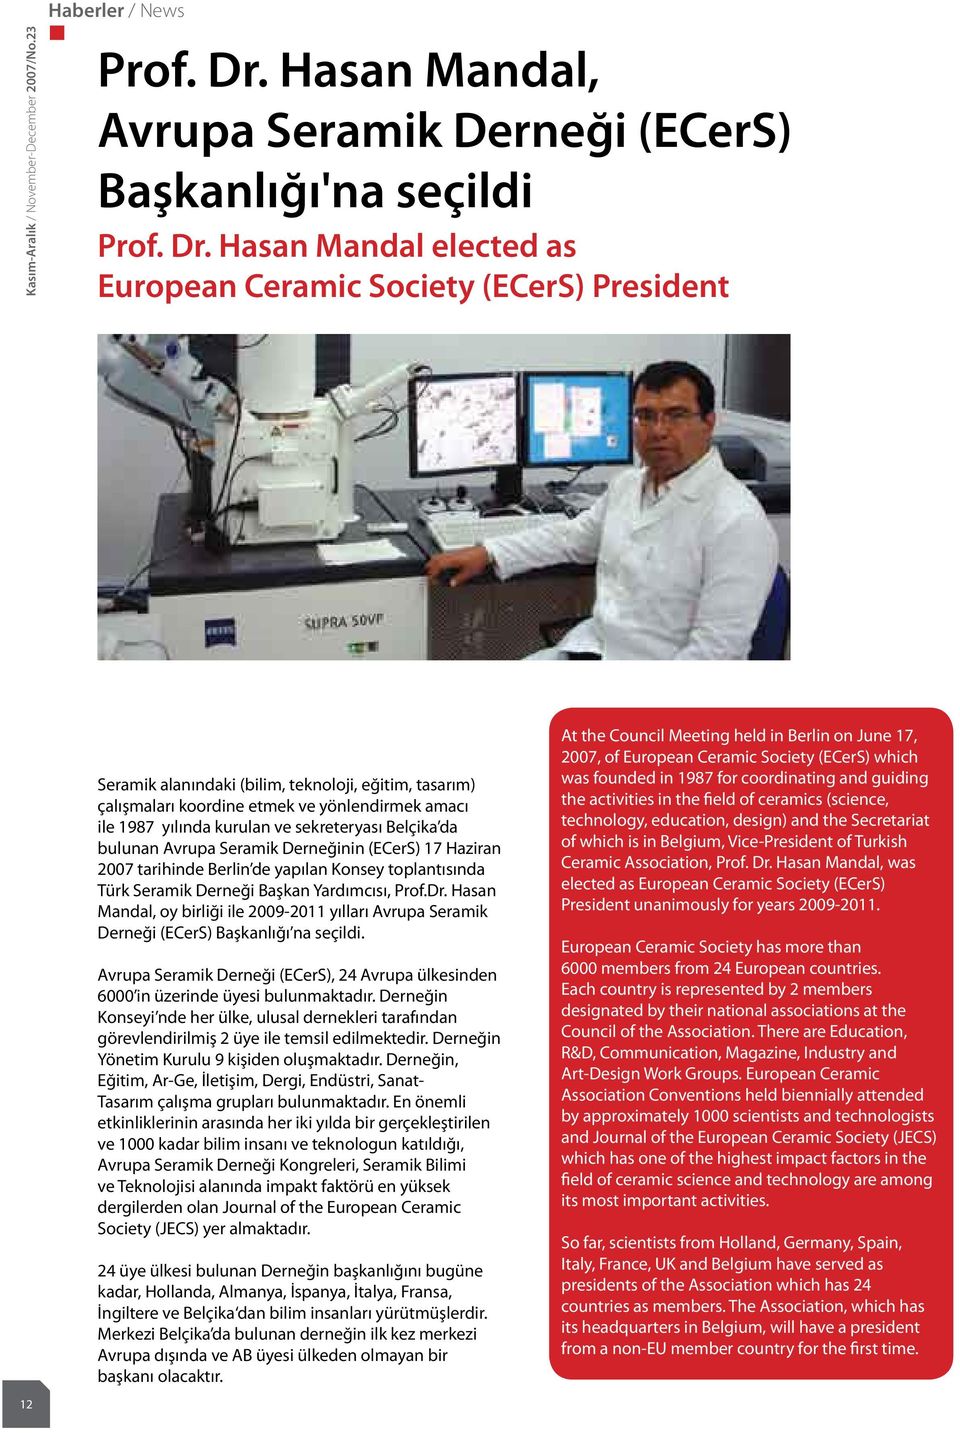 Hasan Mandal elected as European Ceramic Society (ECerS) President 12 Seramik alanındaki (bilim, teknoloji, eğitim, tasarım) çalışmaları koordine etmek ve yönlendirmek amacı ile 1987 yılında kurulan